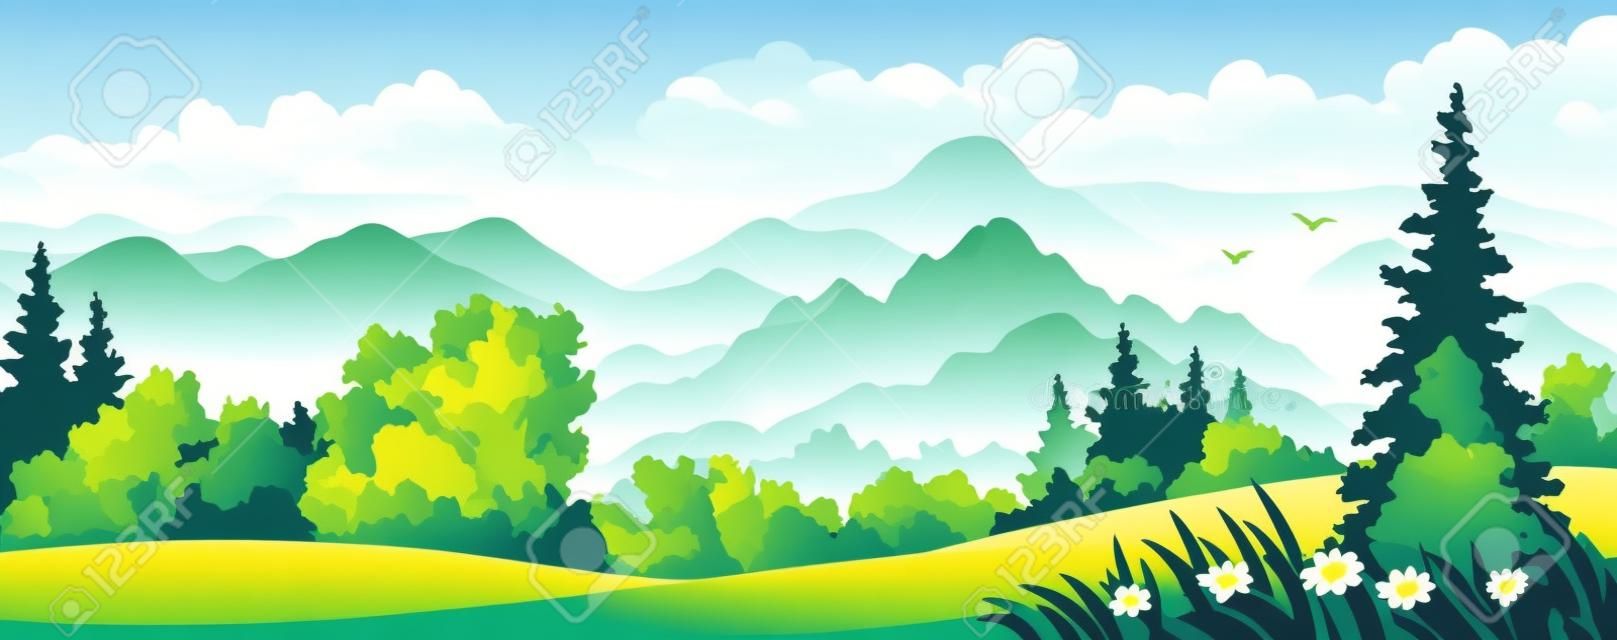 Ilustración vectorial de un hermoso bosque en las montañas